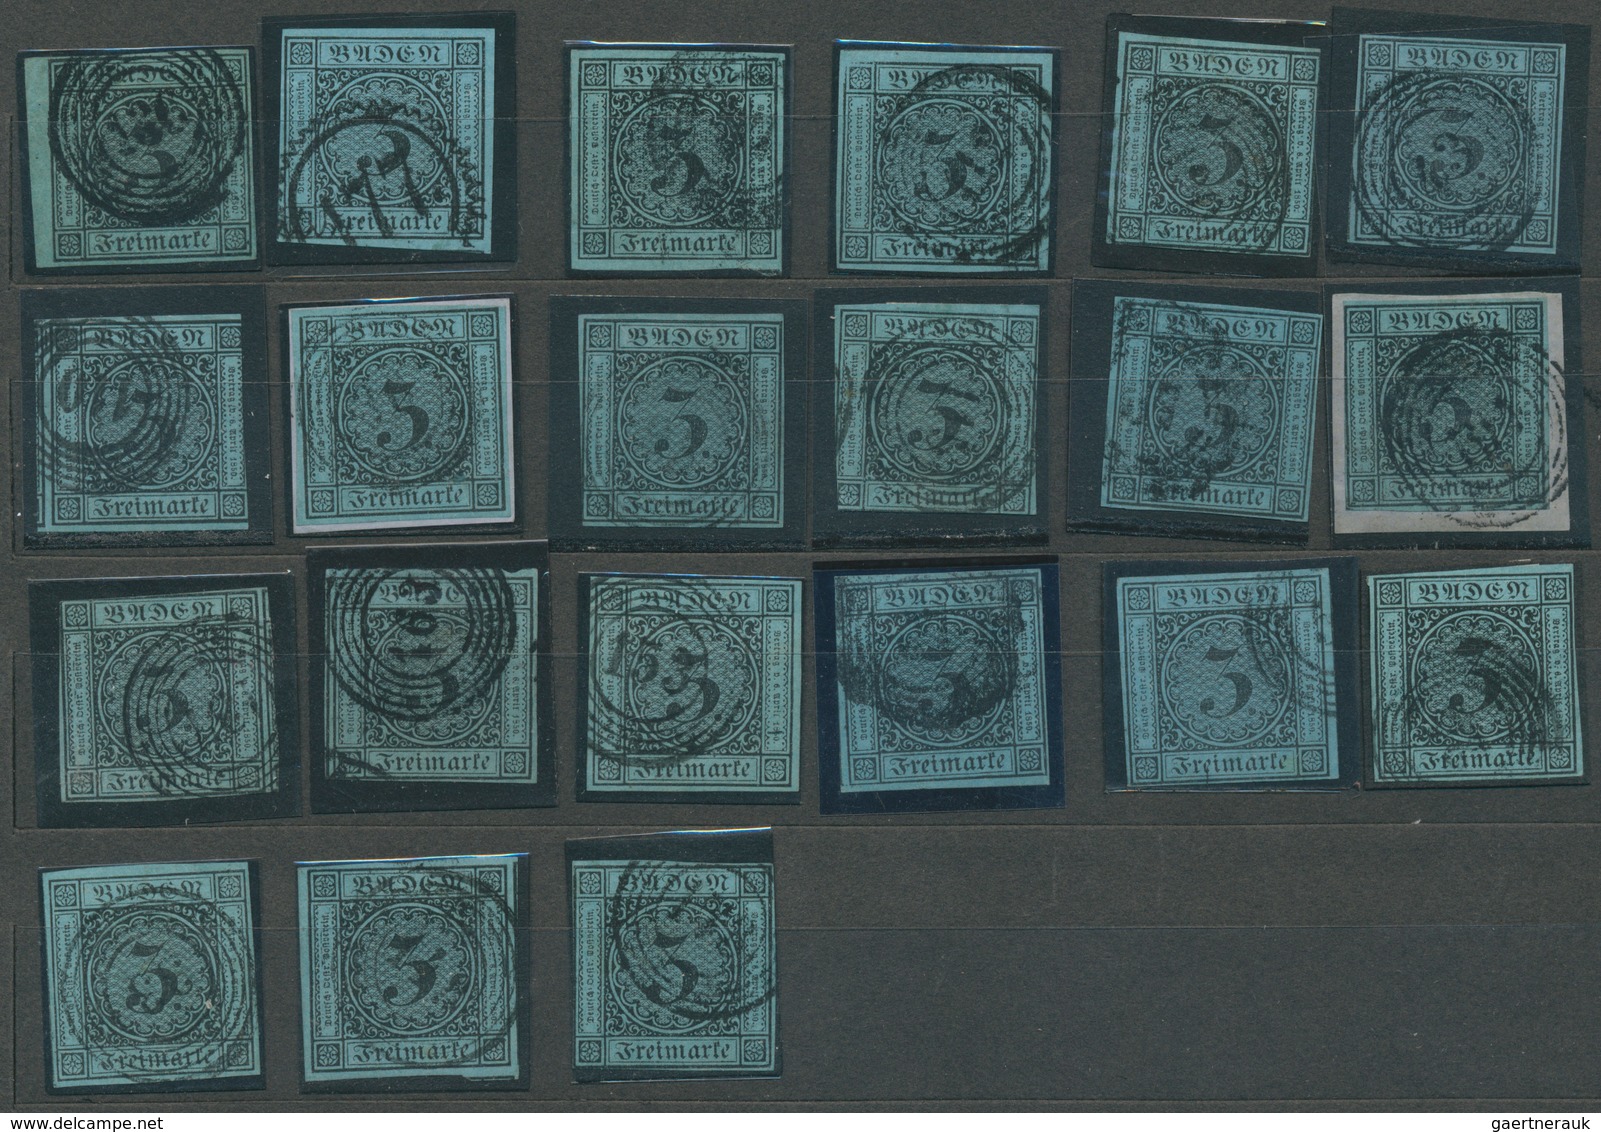 31182 Baden - Marken und Briefe: 1851/67, Umfangreicher Posten von fast fünfzig großen Steckkarten (meist